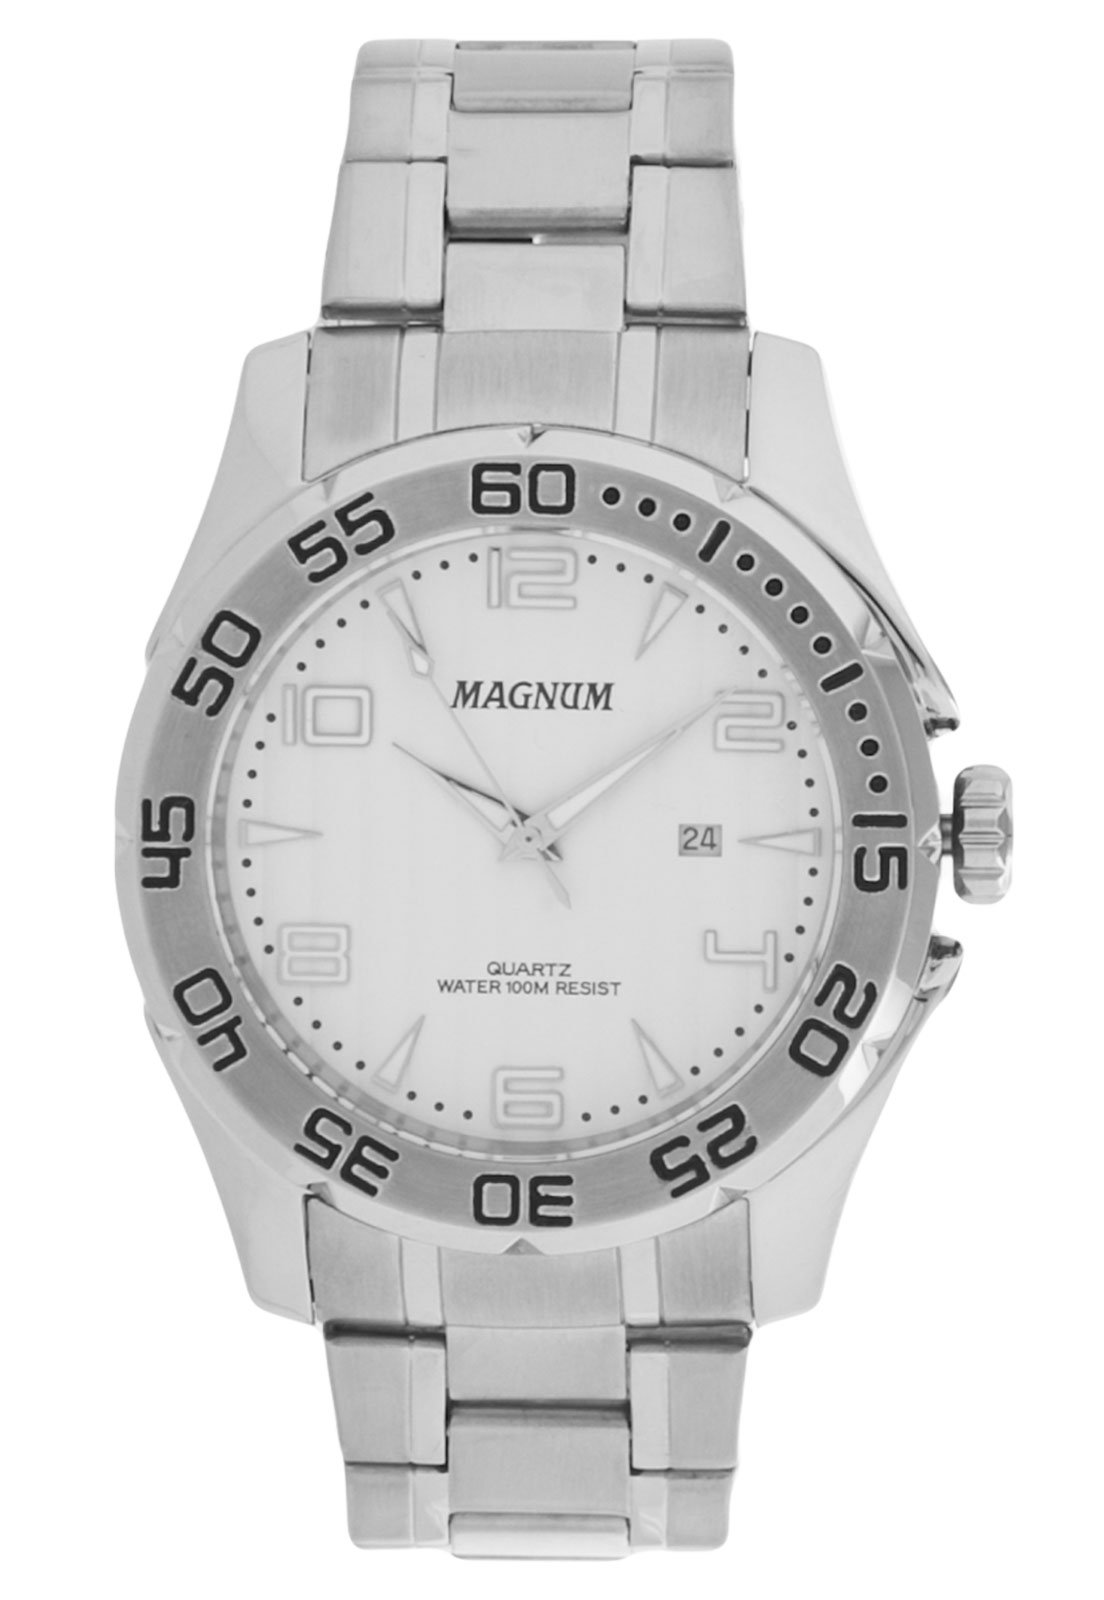 Relógio MAGNUM masculino analógico prata MA31702Q - aconfianca